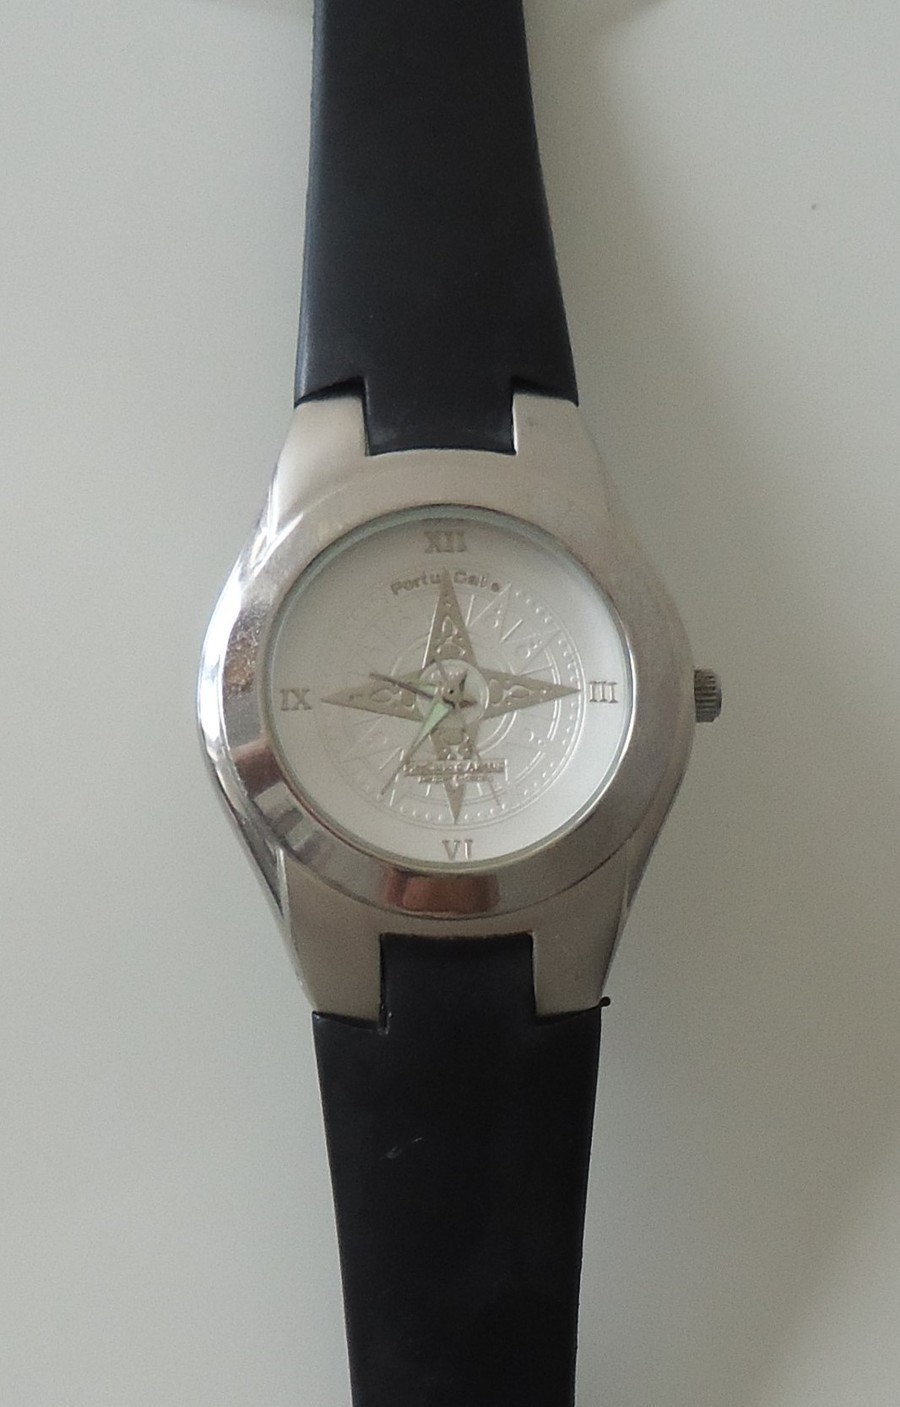 PortuCalis Elegance - Relógio de pulso vintage 4